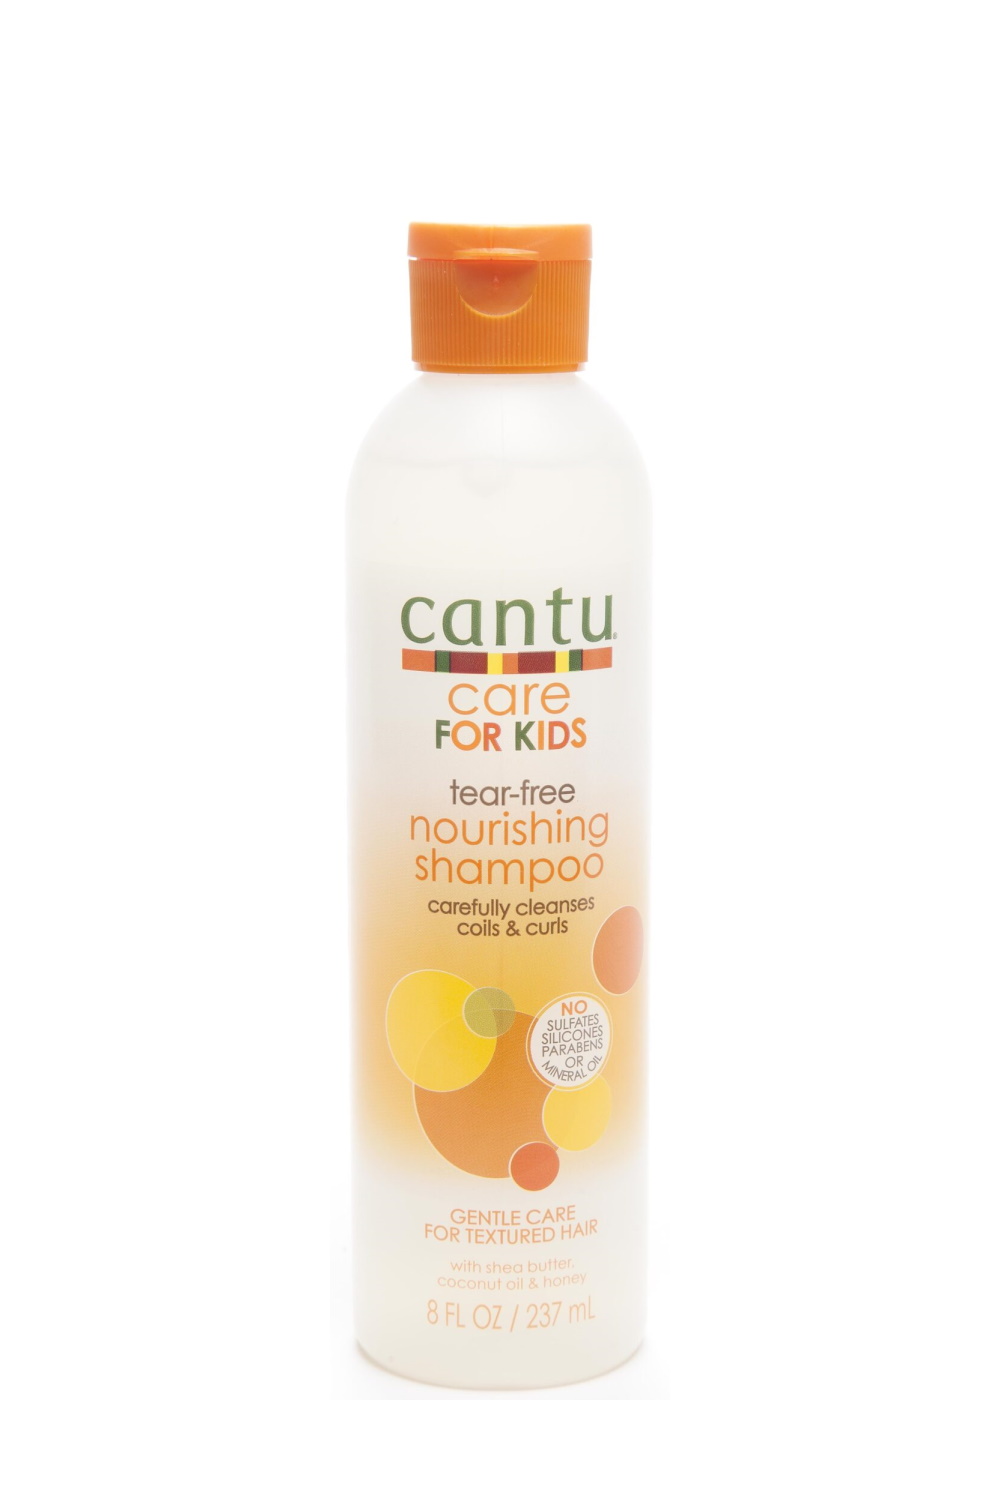 Cantu Care for Kids Tear-Free Nourishing Shampoo, 8 Fluid Ounce